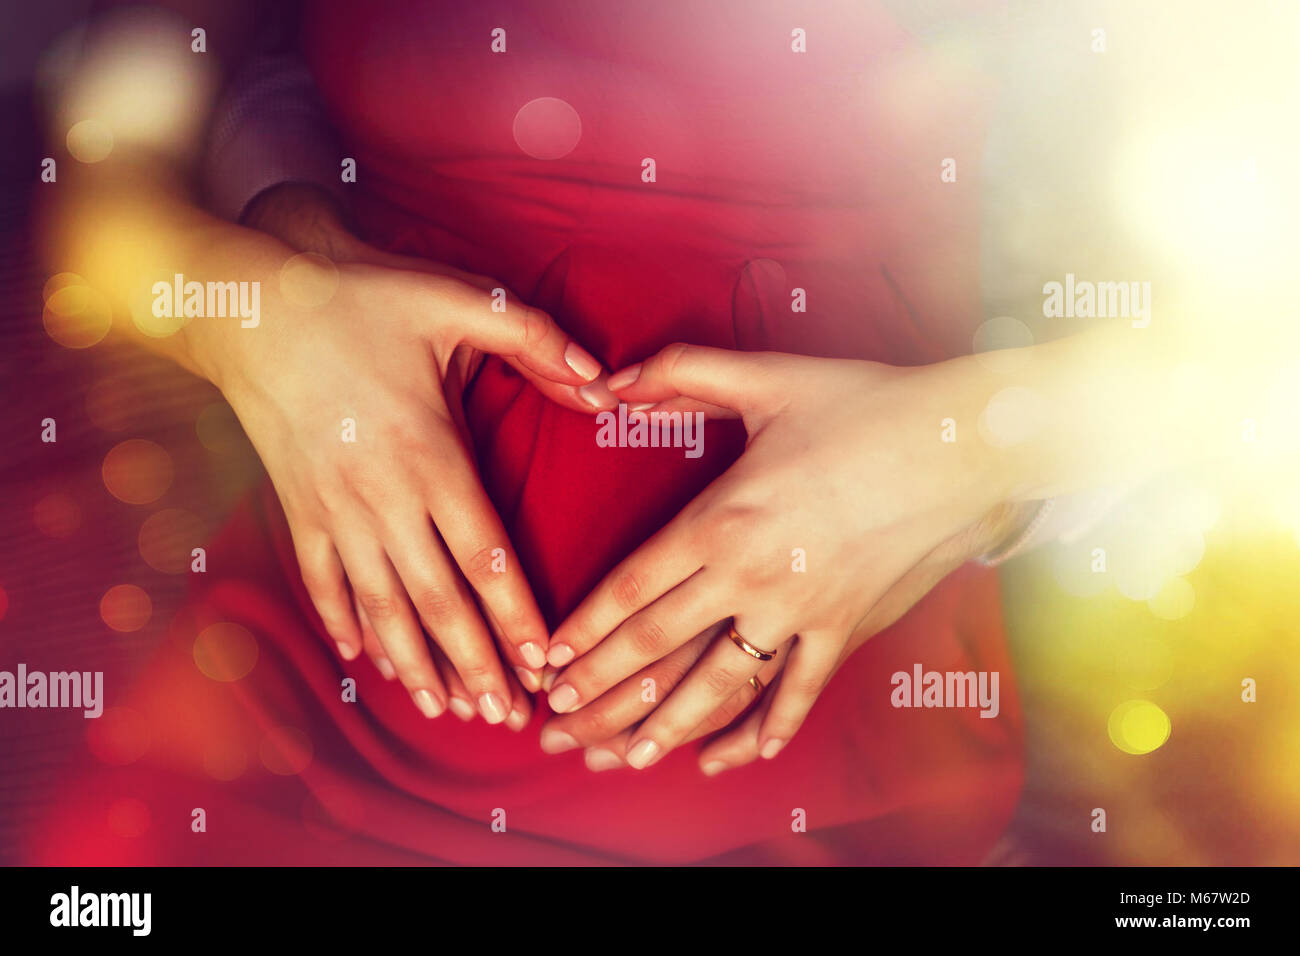 La gravidanza e la famiglia il concetto di amore. Aspettando i genitori di contenimento a forma di cuore le mani sulla pancia Foto Stock